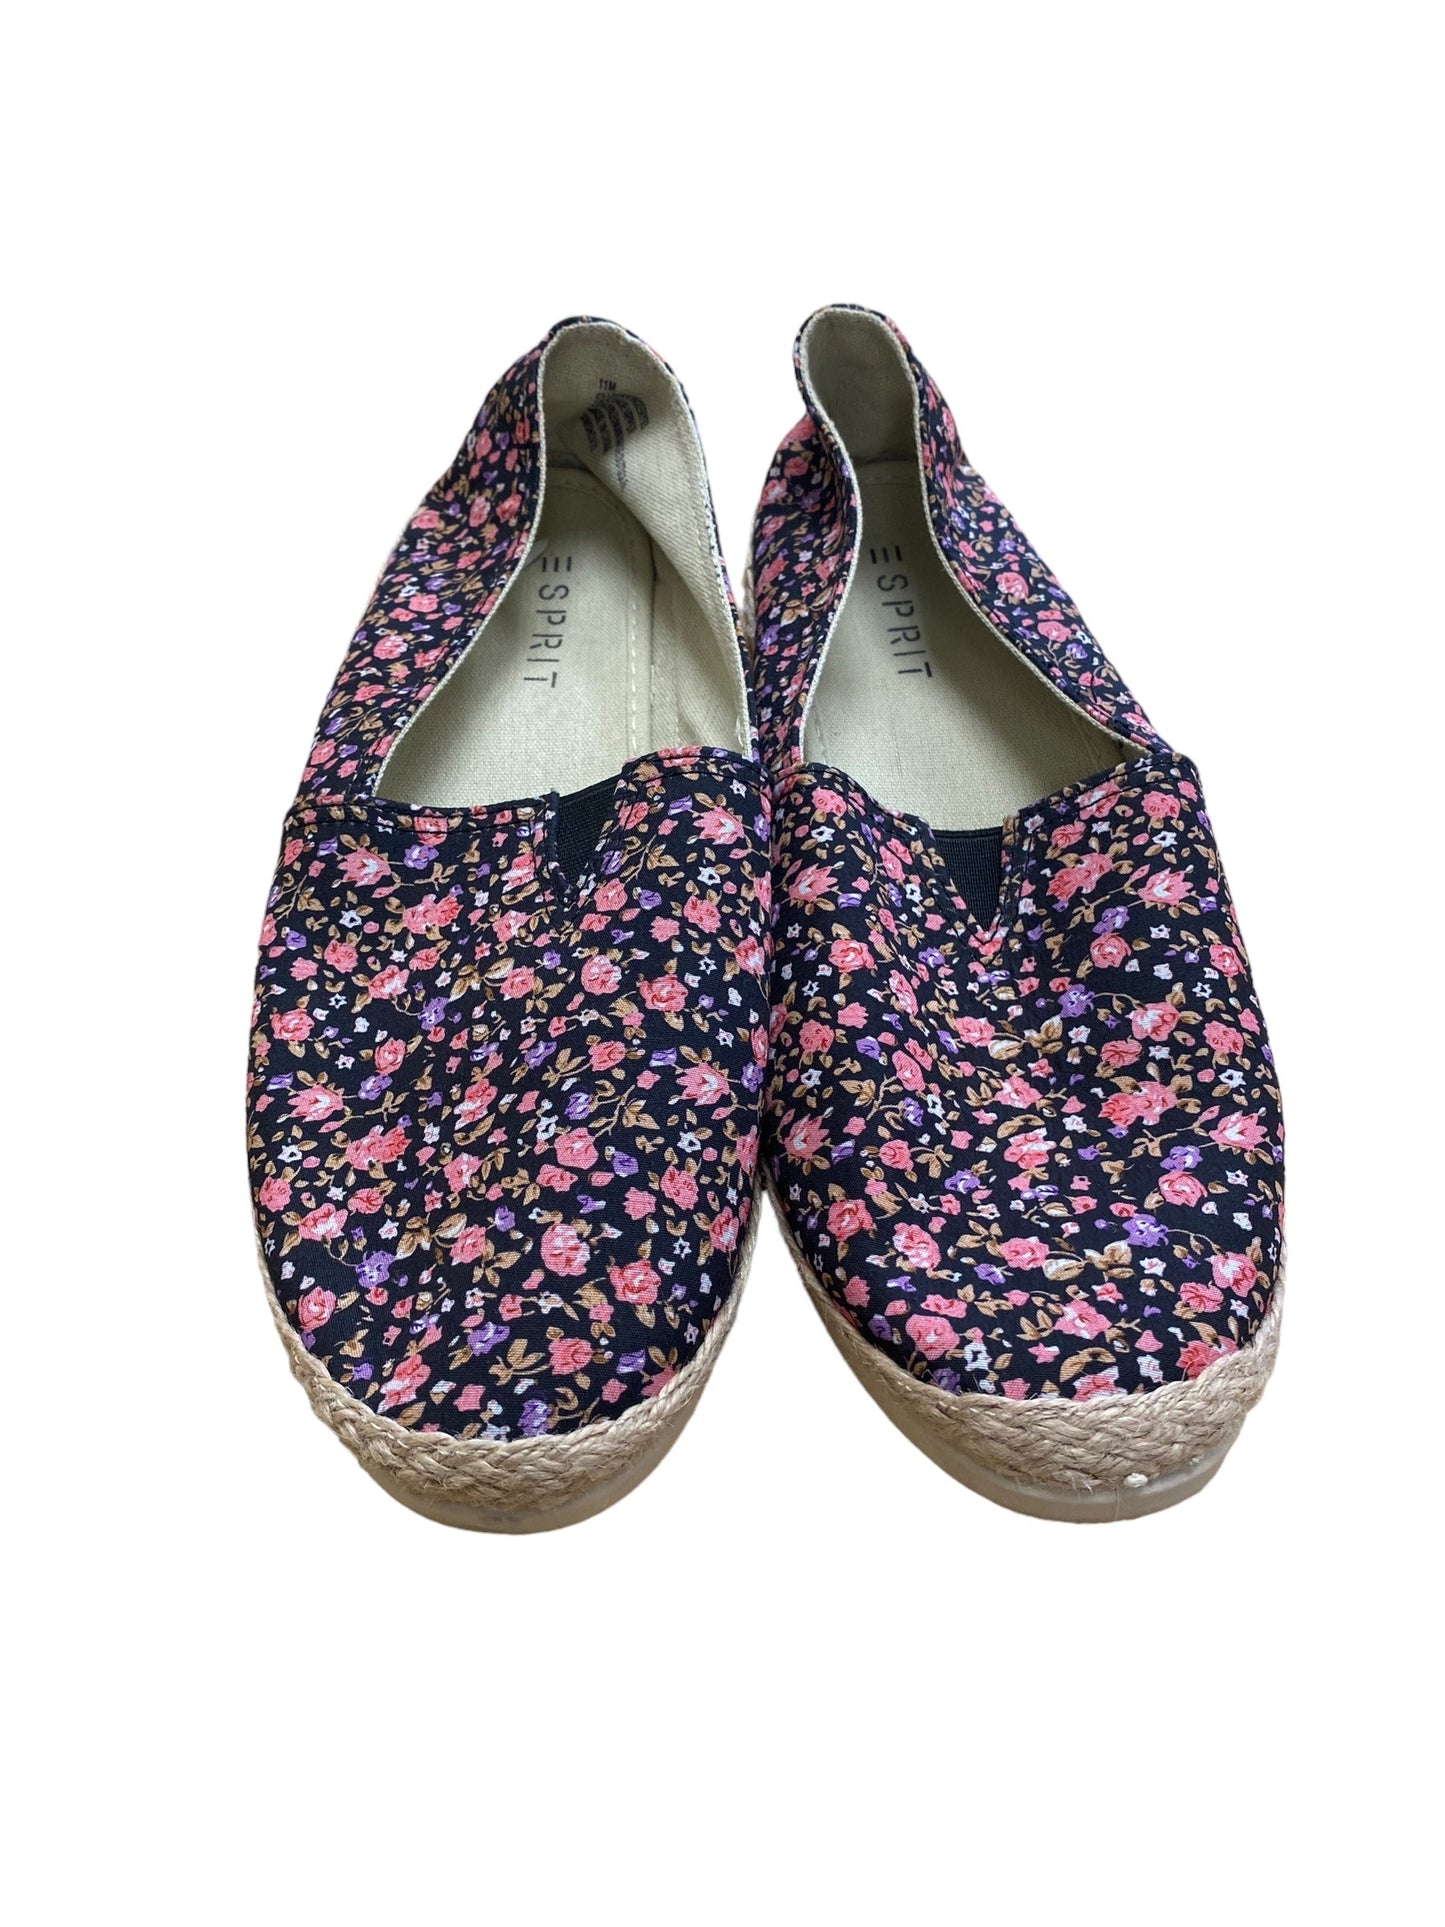 Floral Print Shoes Flats Esprit, Size 11